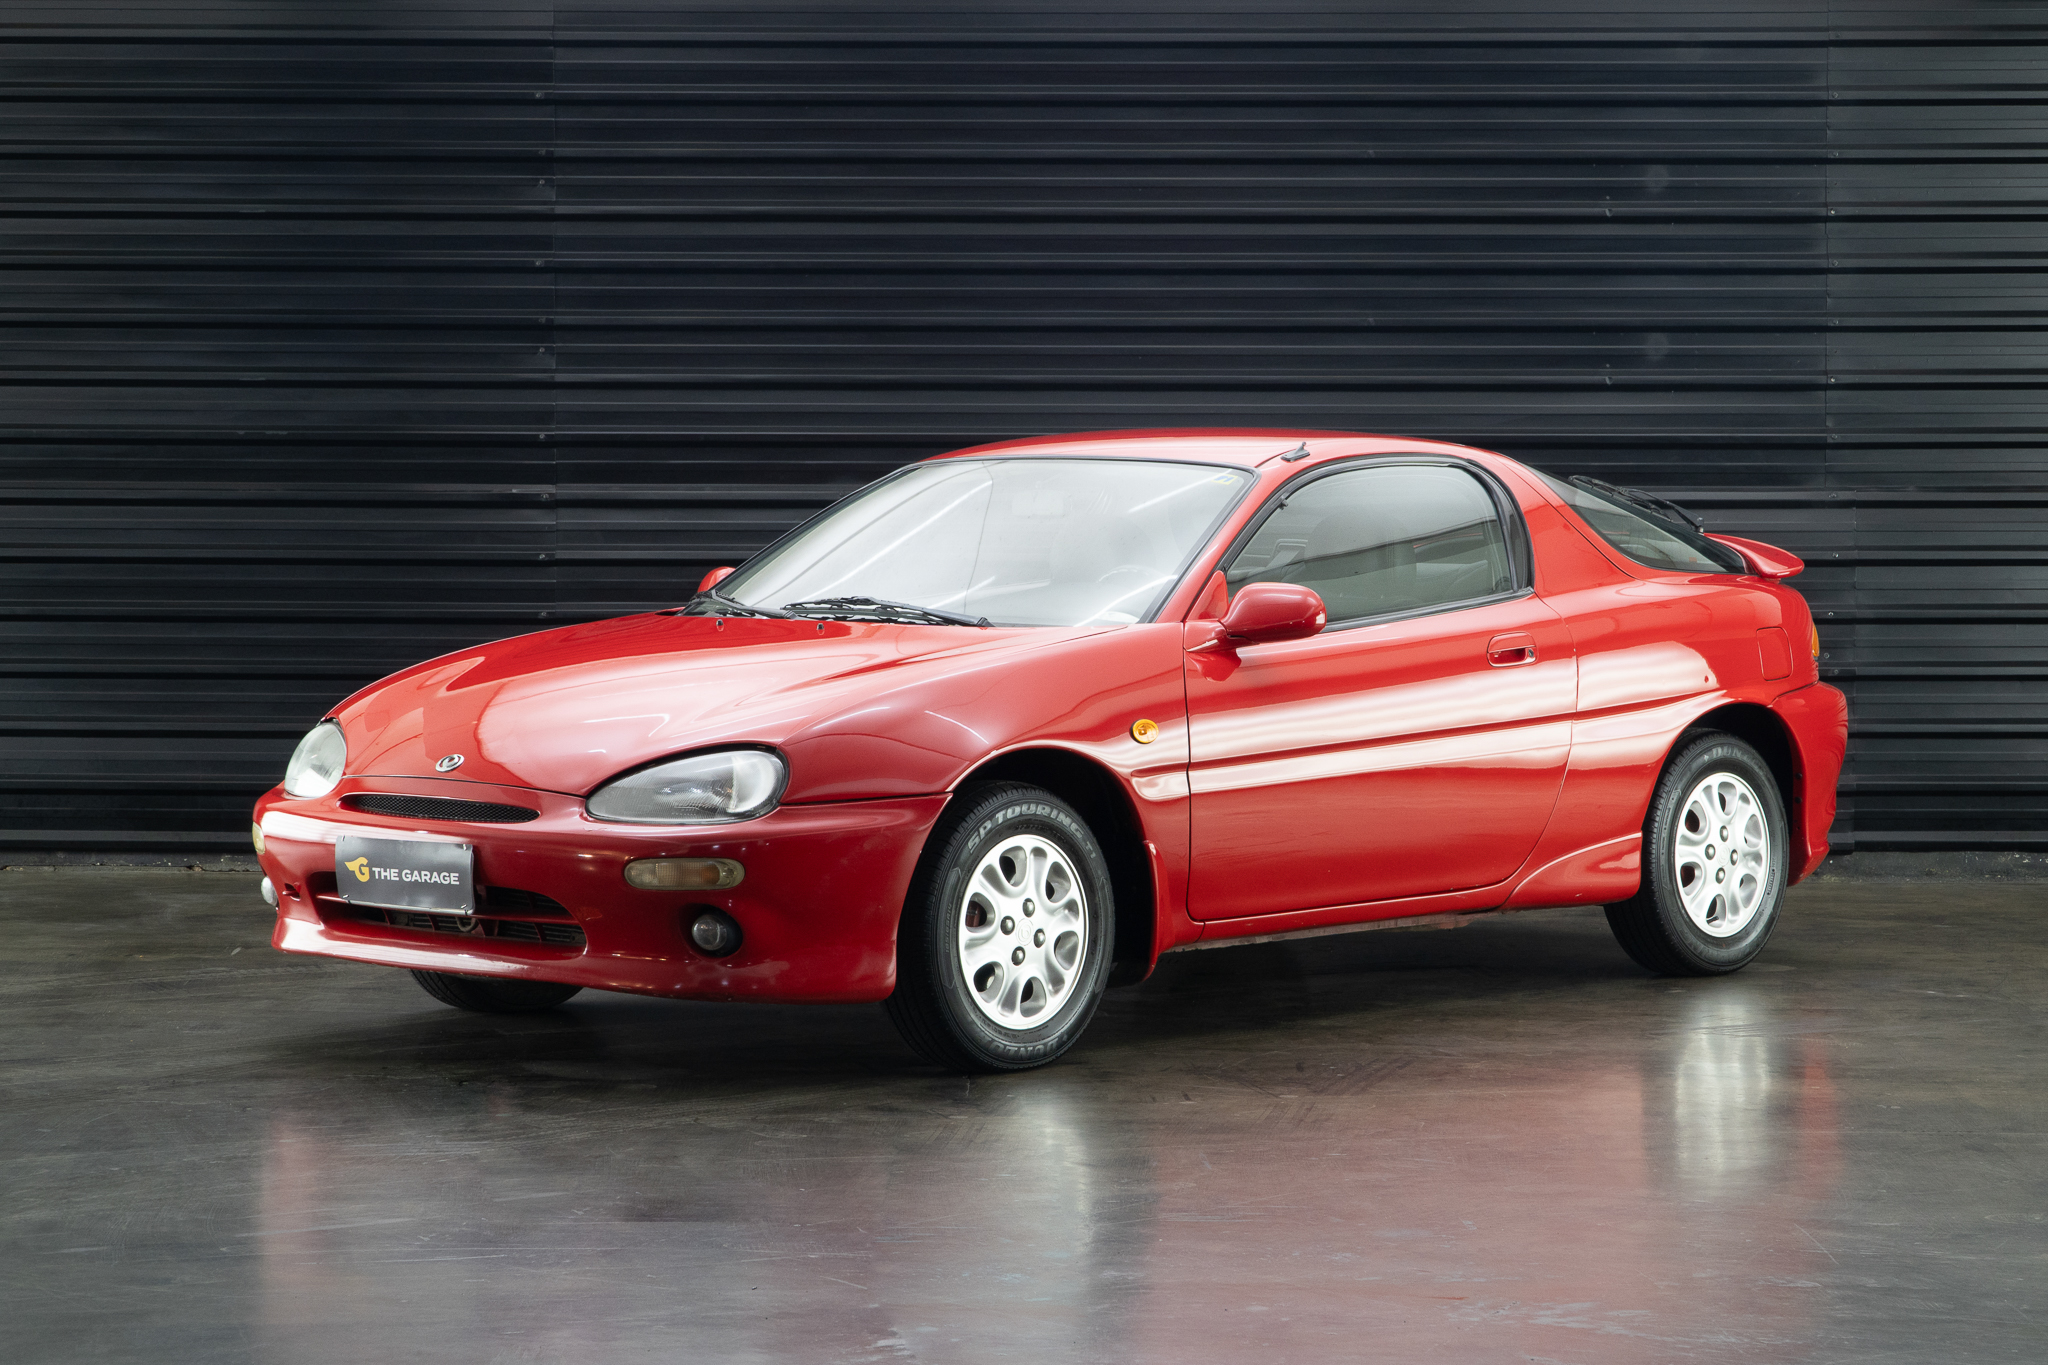 1997 Mazda MX-3 a venda for sale the garage